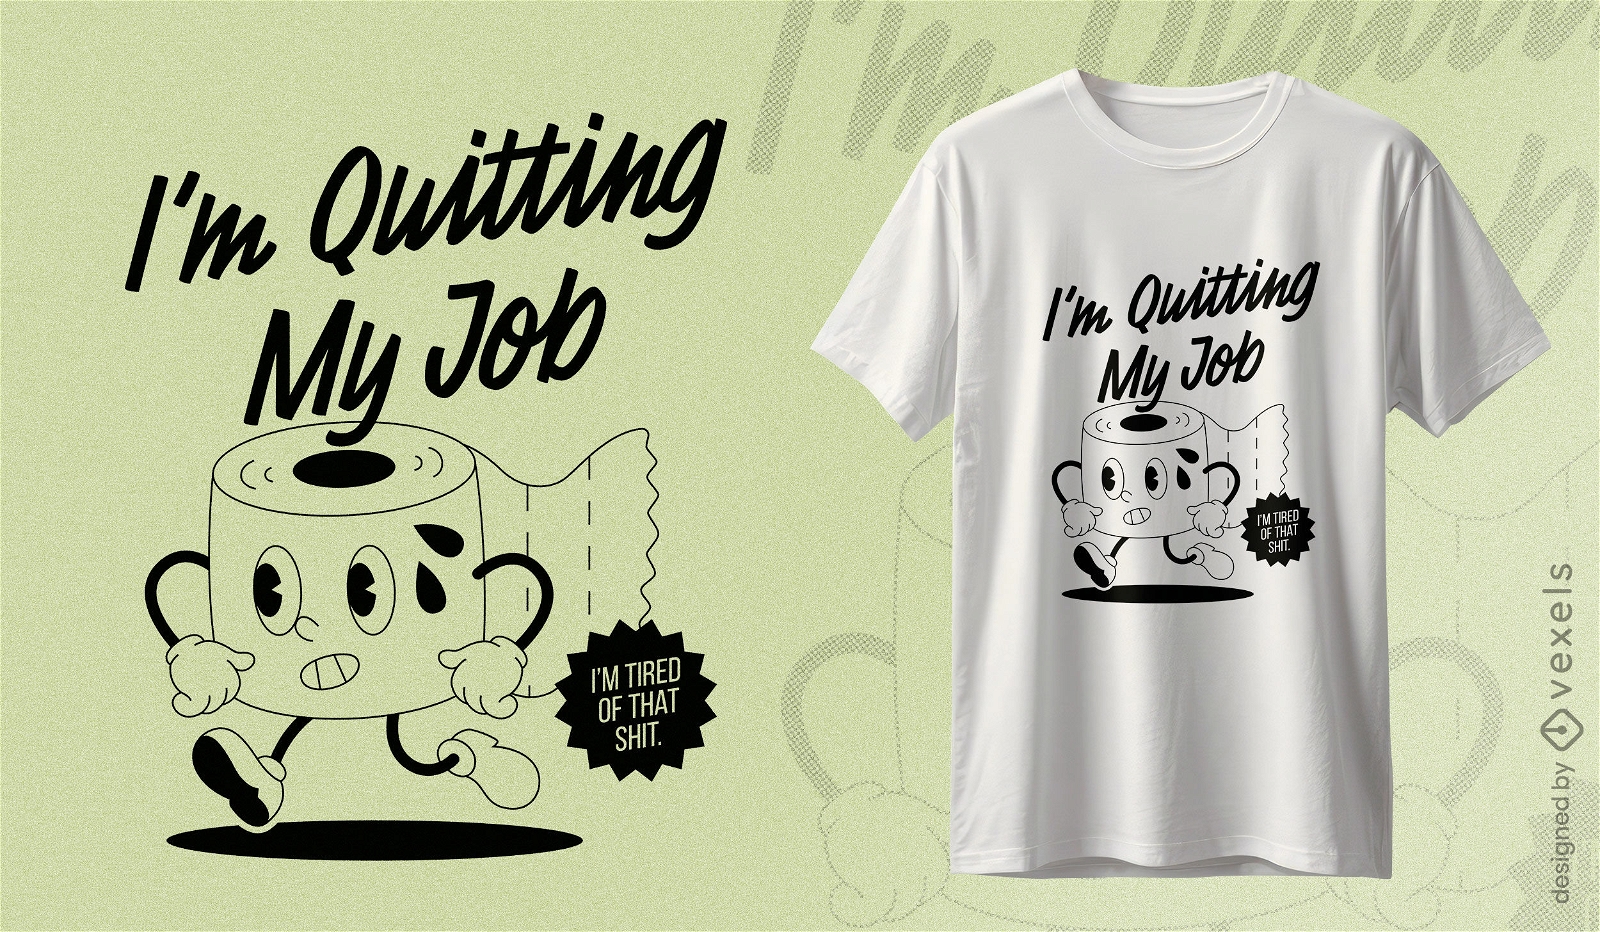 Kaffee-T-Shirt-Design zum Aufgeben des Jobs